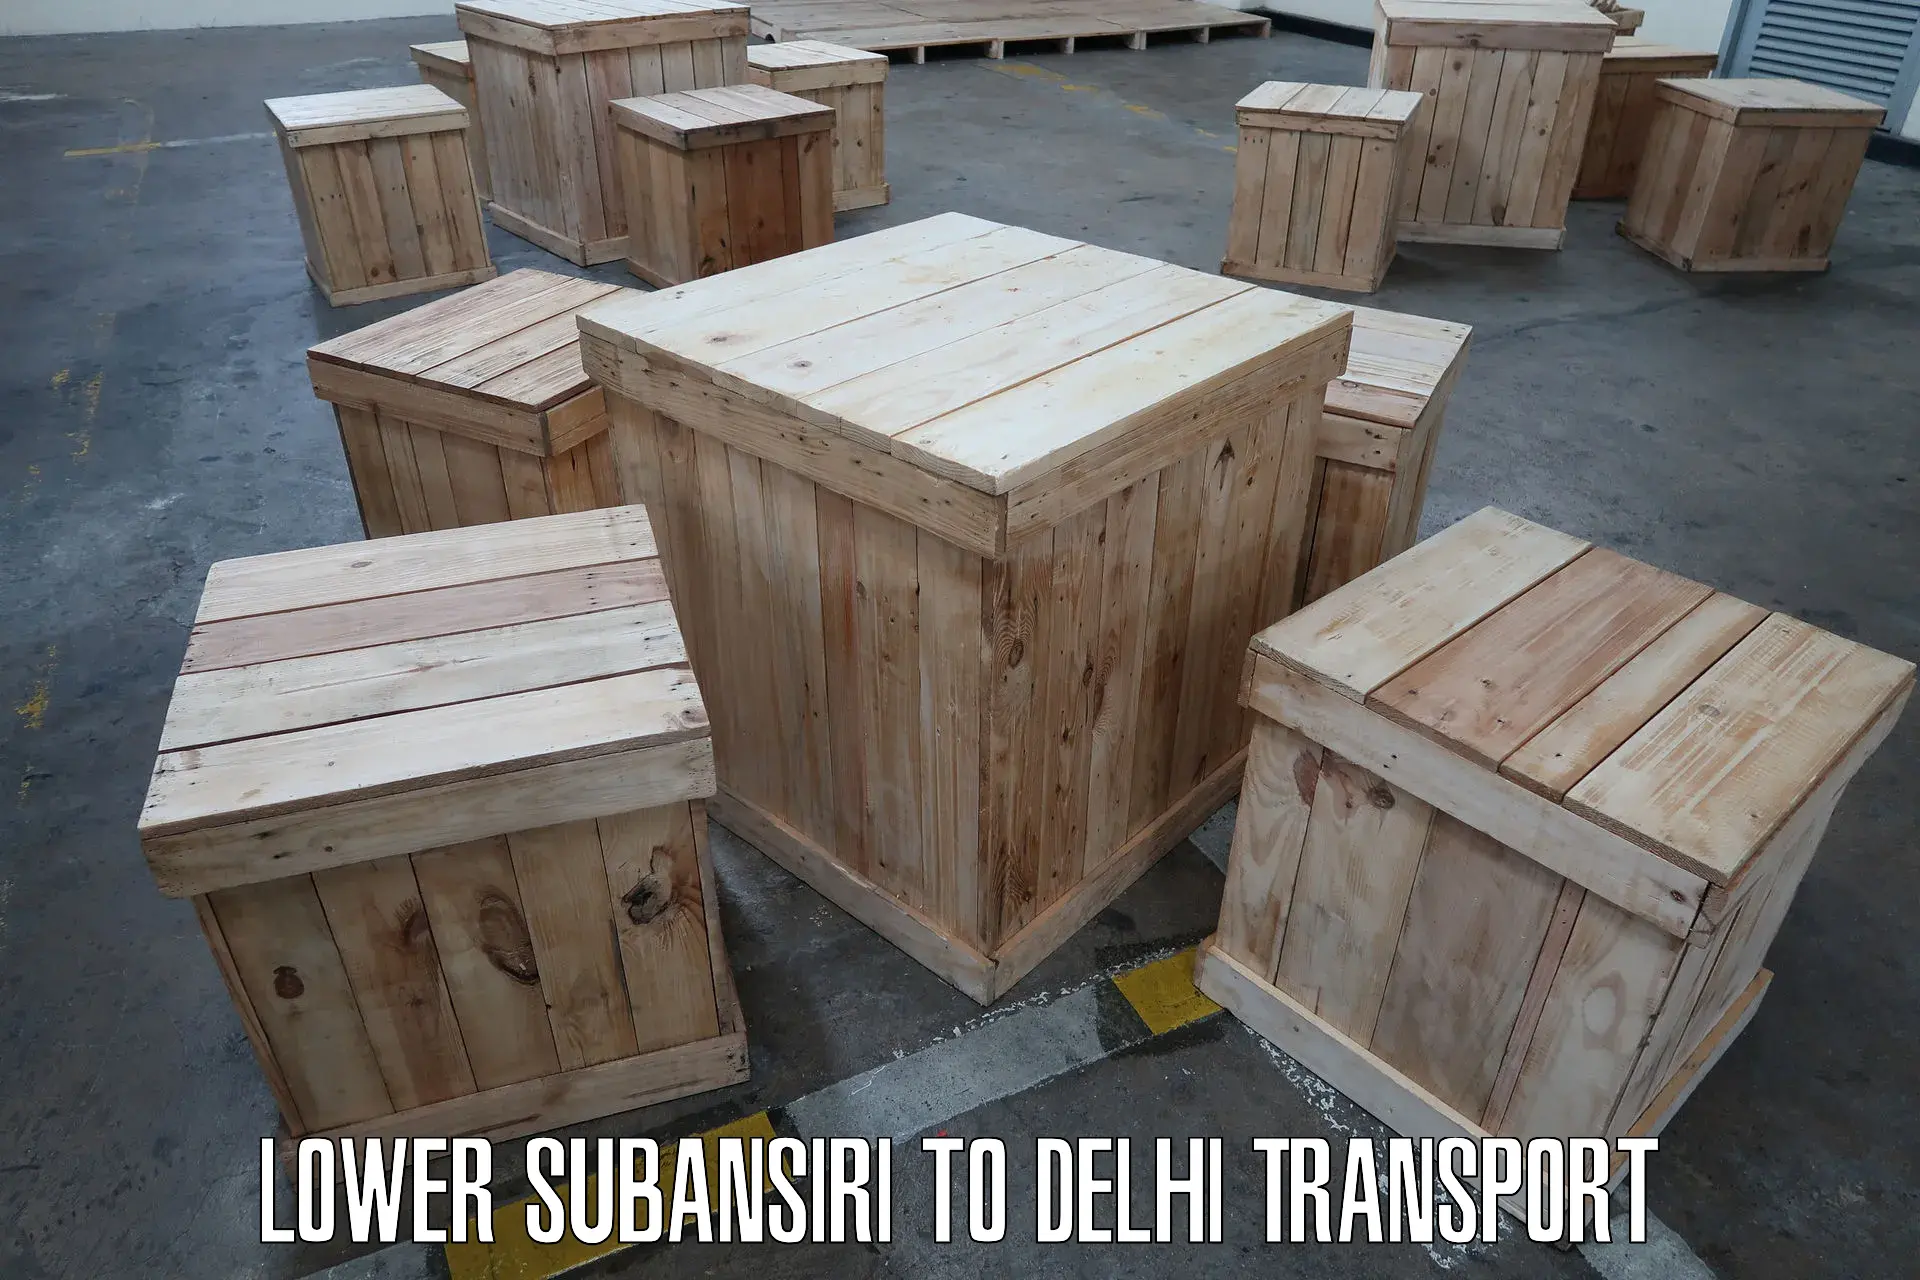 Door to door transport services Lower Subansiri to Delhi